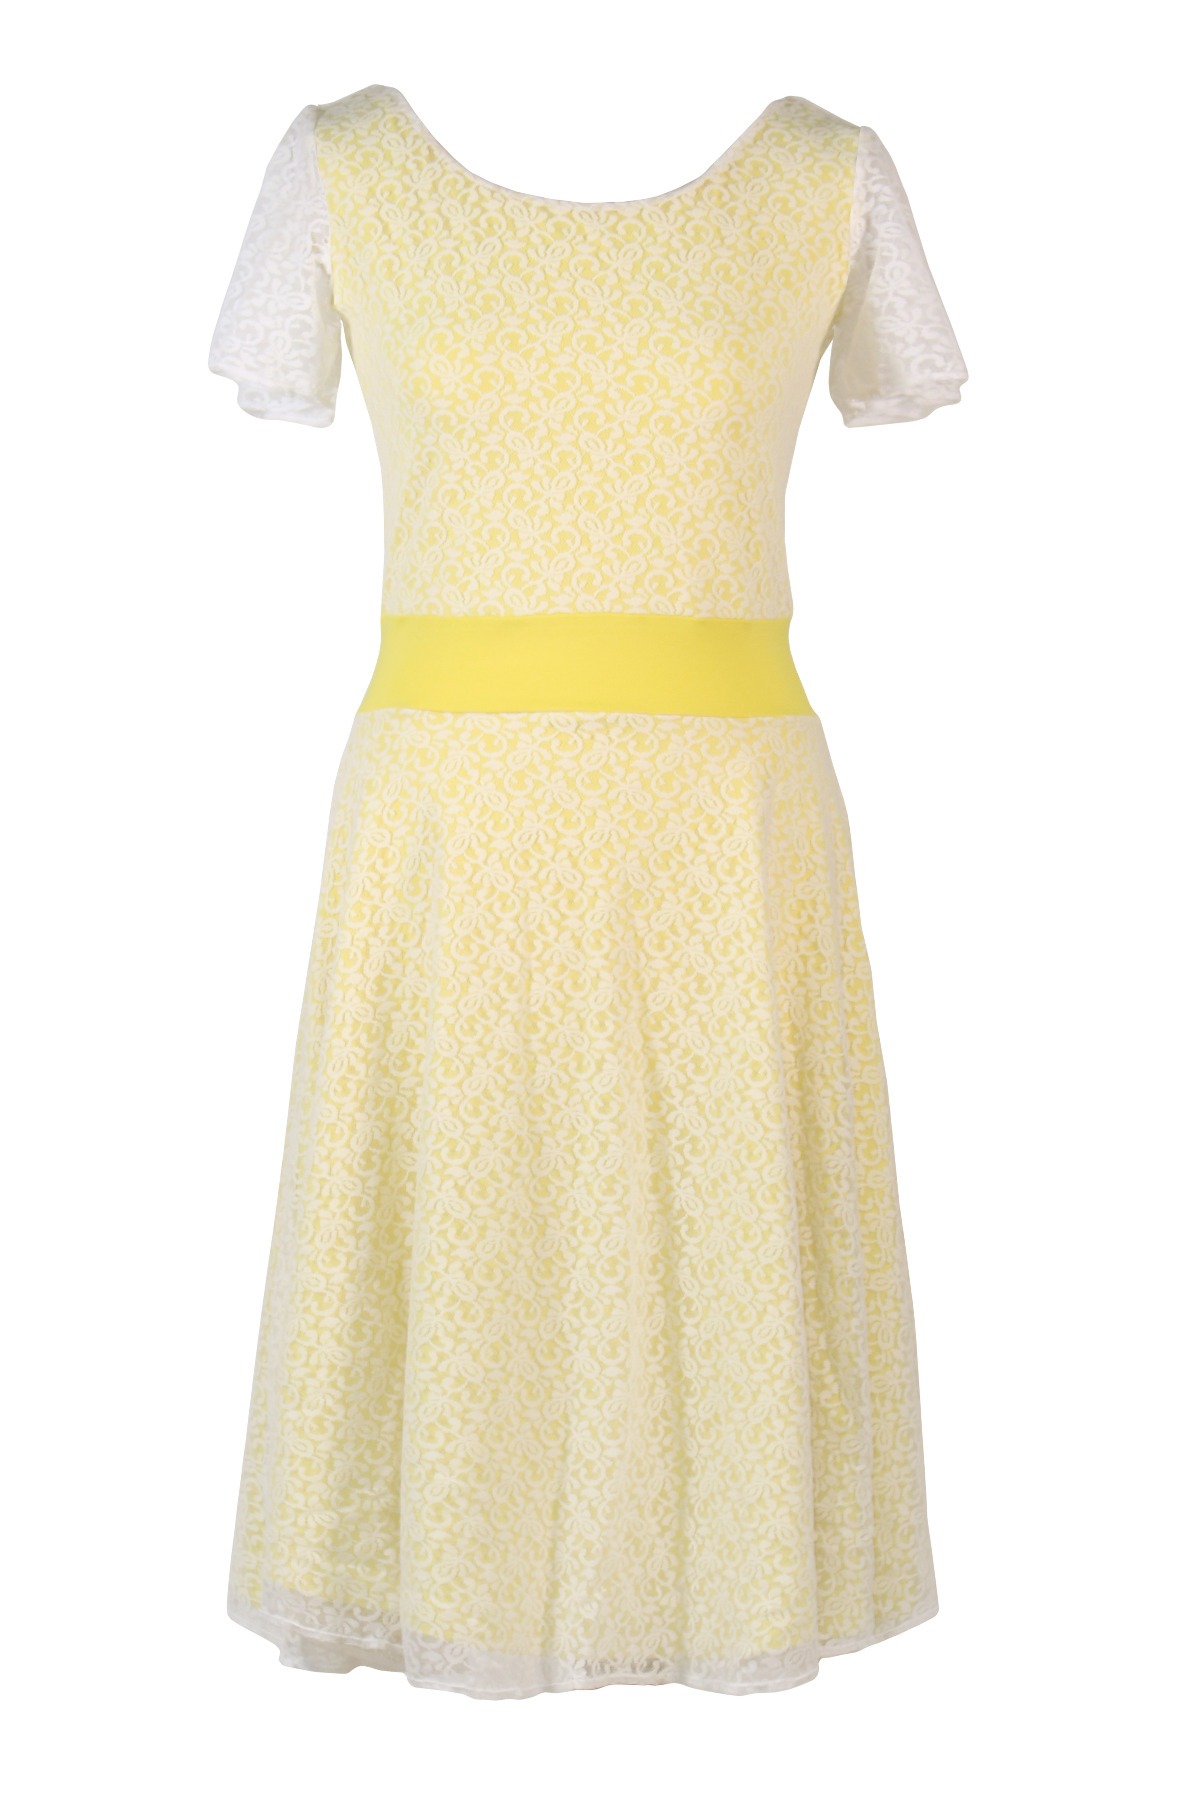 Bio-Kleid Perle zitrone gelb + weiß